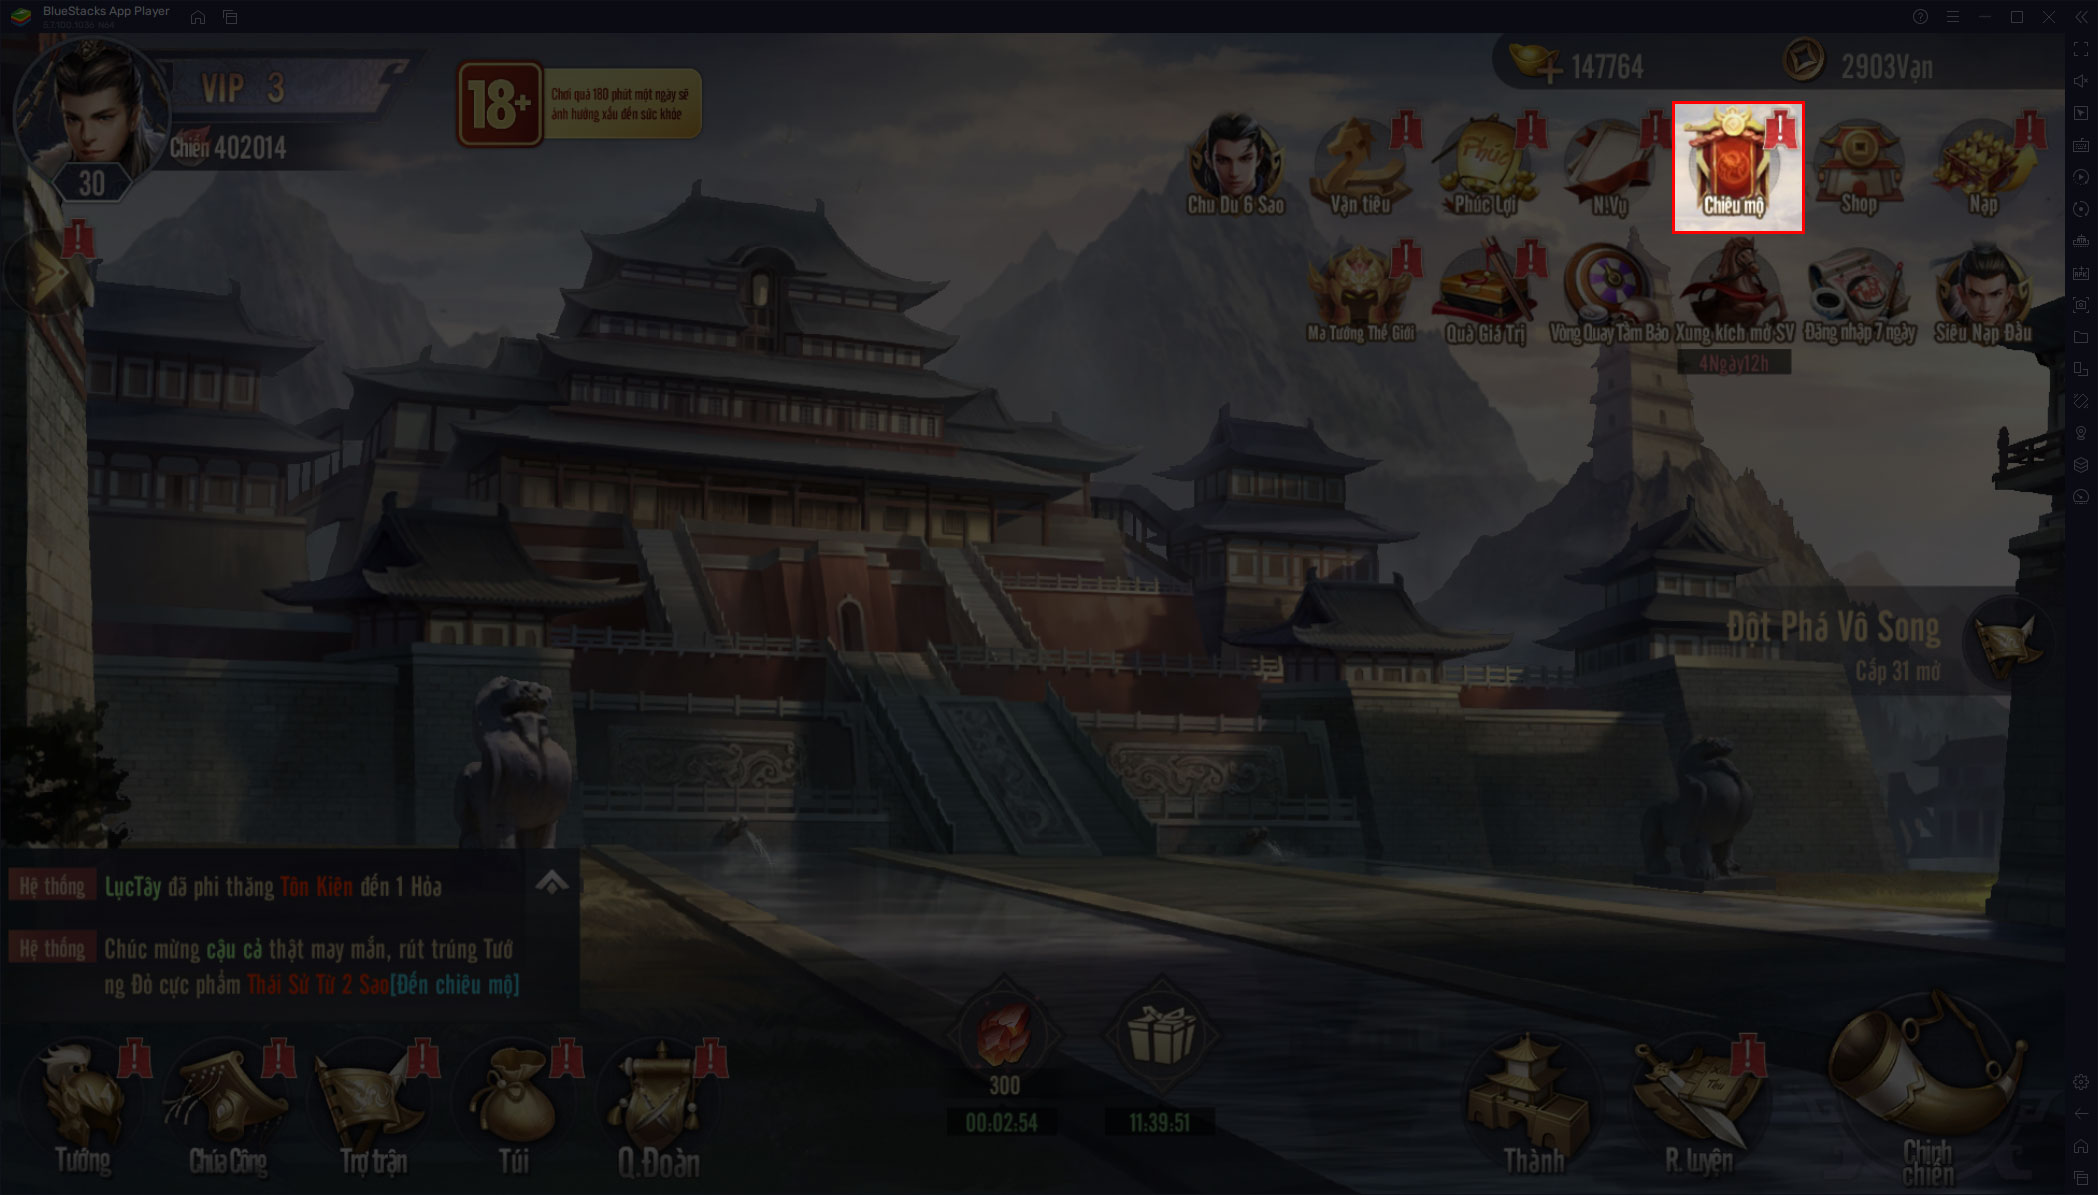 Hướng dẫn game thủ lần đầu chơi Vương Giả Thiên Hạ trên PC